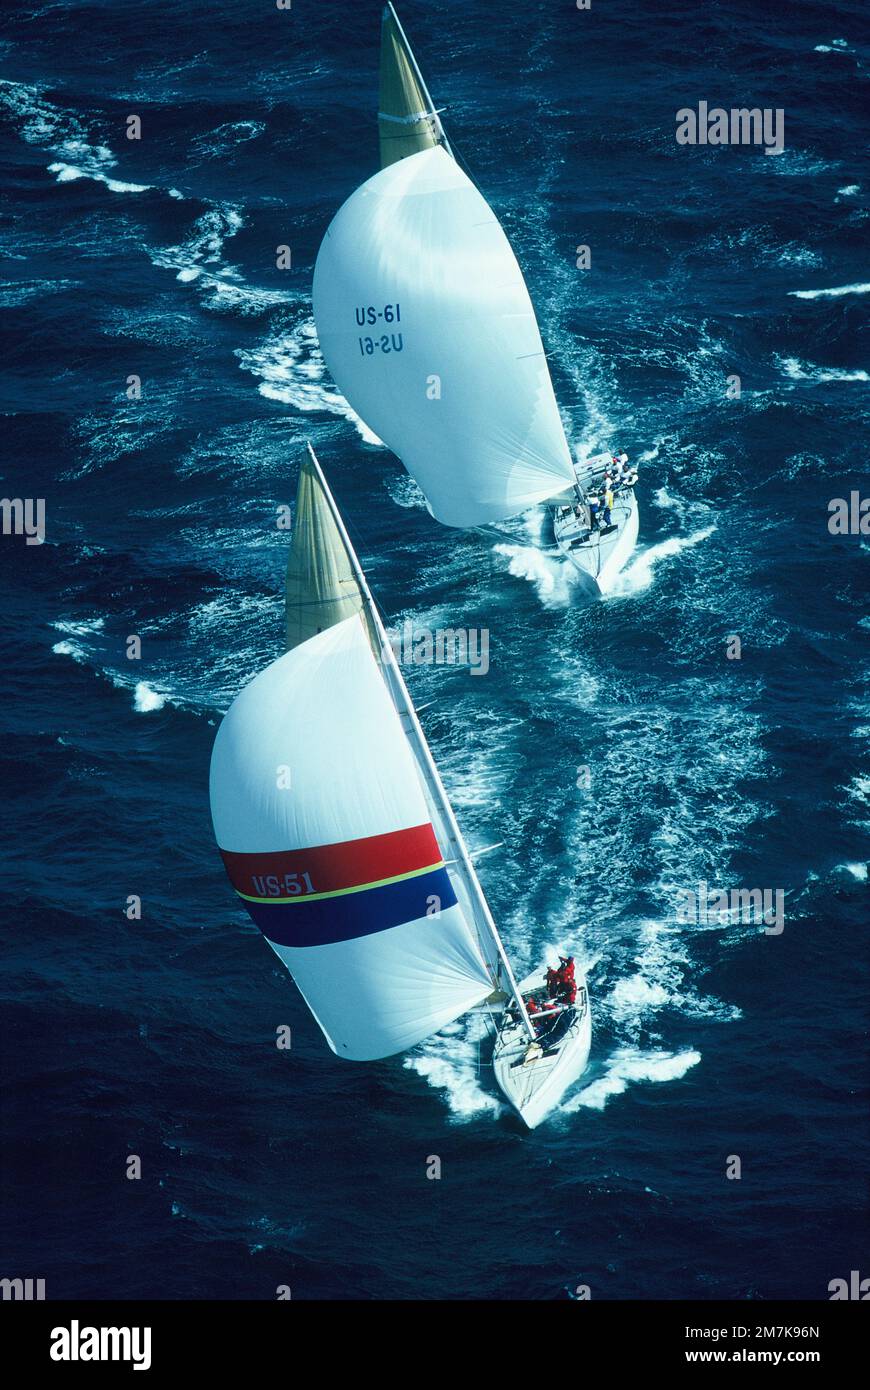 Australie. Fremantle. America's Cup Yacht Race. 1986. Vue aérienne de deux yachts. Cœur de l'Amérique devant les États-Unis R-1. Banque D'Images